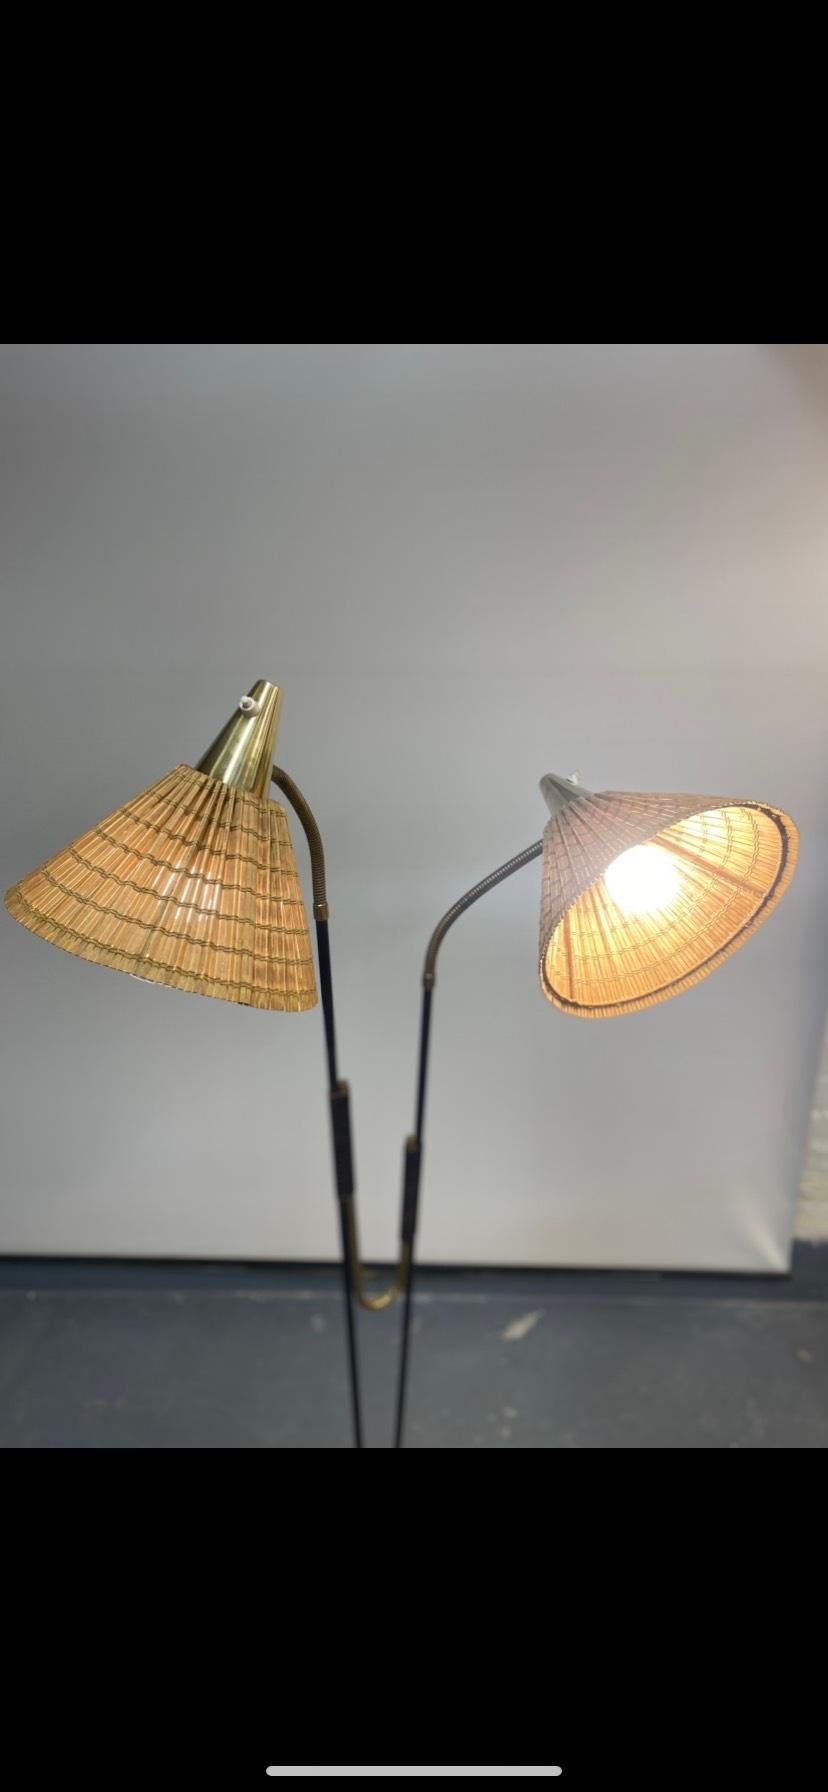 Un lampadaire Itsu assez rare avec un beau design présentant deux têtes lumineuses distinctes, qui peuvent être ajustées dans presque toutes les directions souhaitées. Le métal peint en noir et les pièces en laiton s'accordent parfaitement dans ce